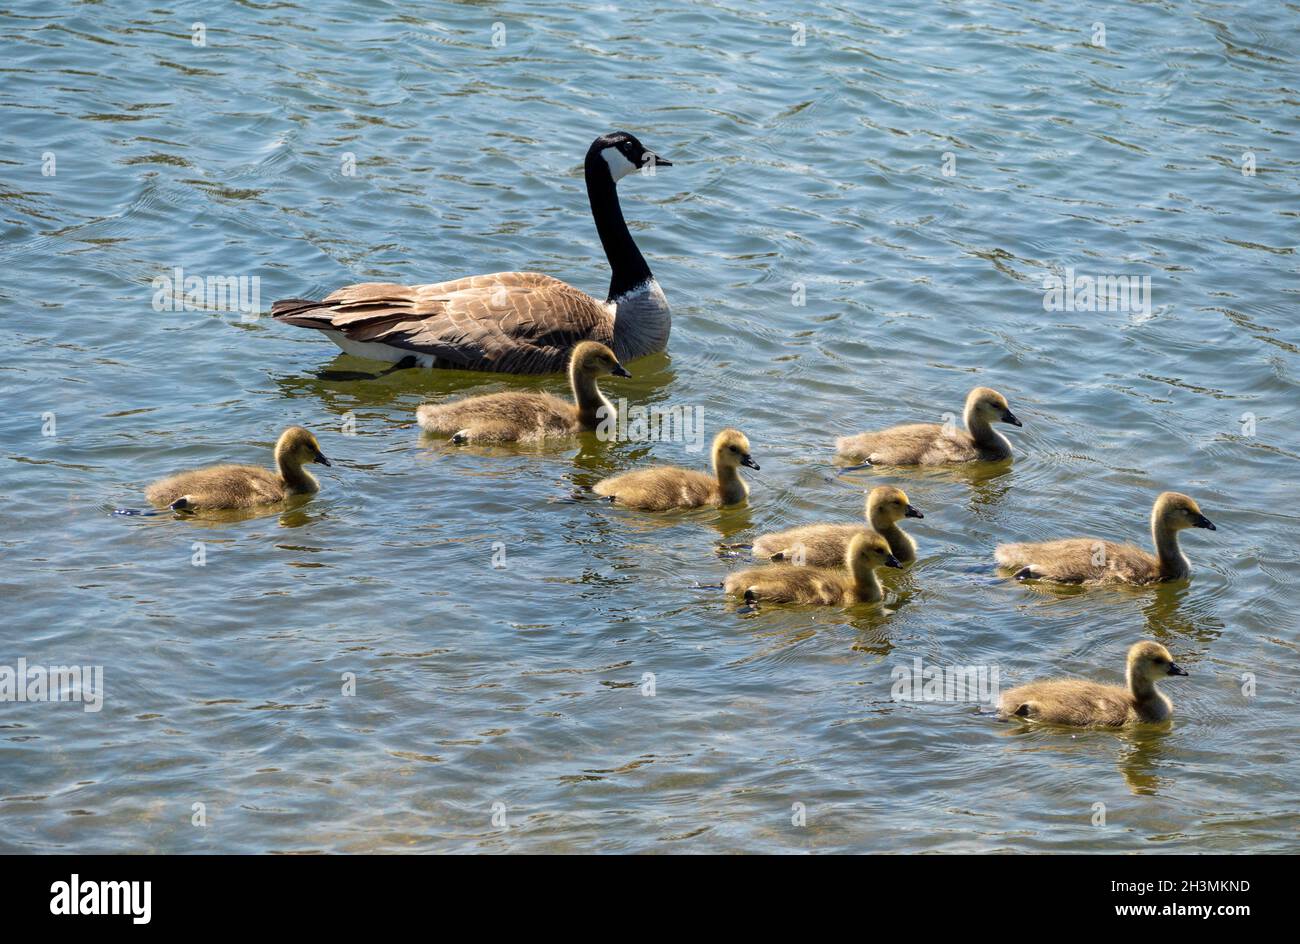 Supervisión de Adultos: Gansos y goslings de Canadá: Un adulto El ganso de Canadá escolta a una familia de 8 gansos jóvenes en un baño en un estanque del parque. Foto de stock